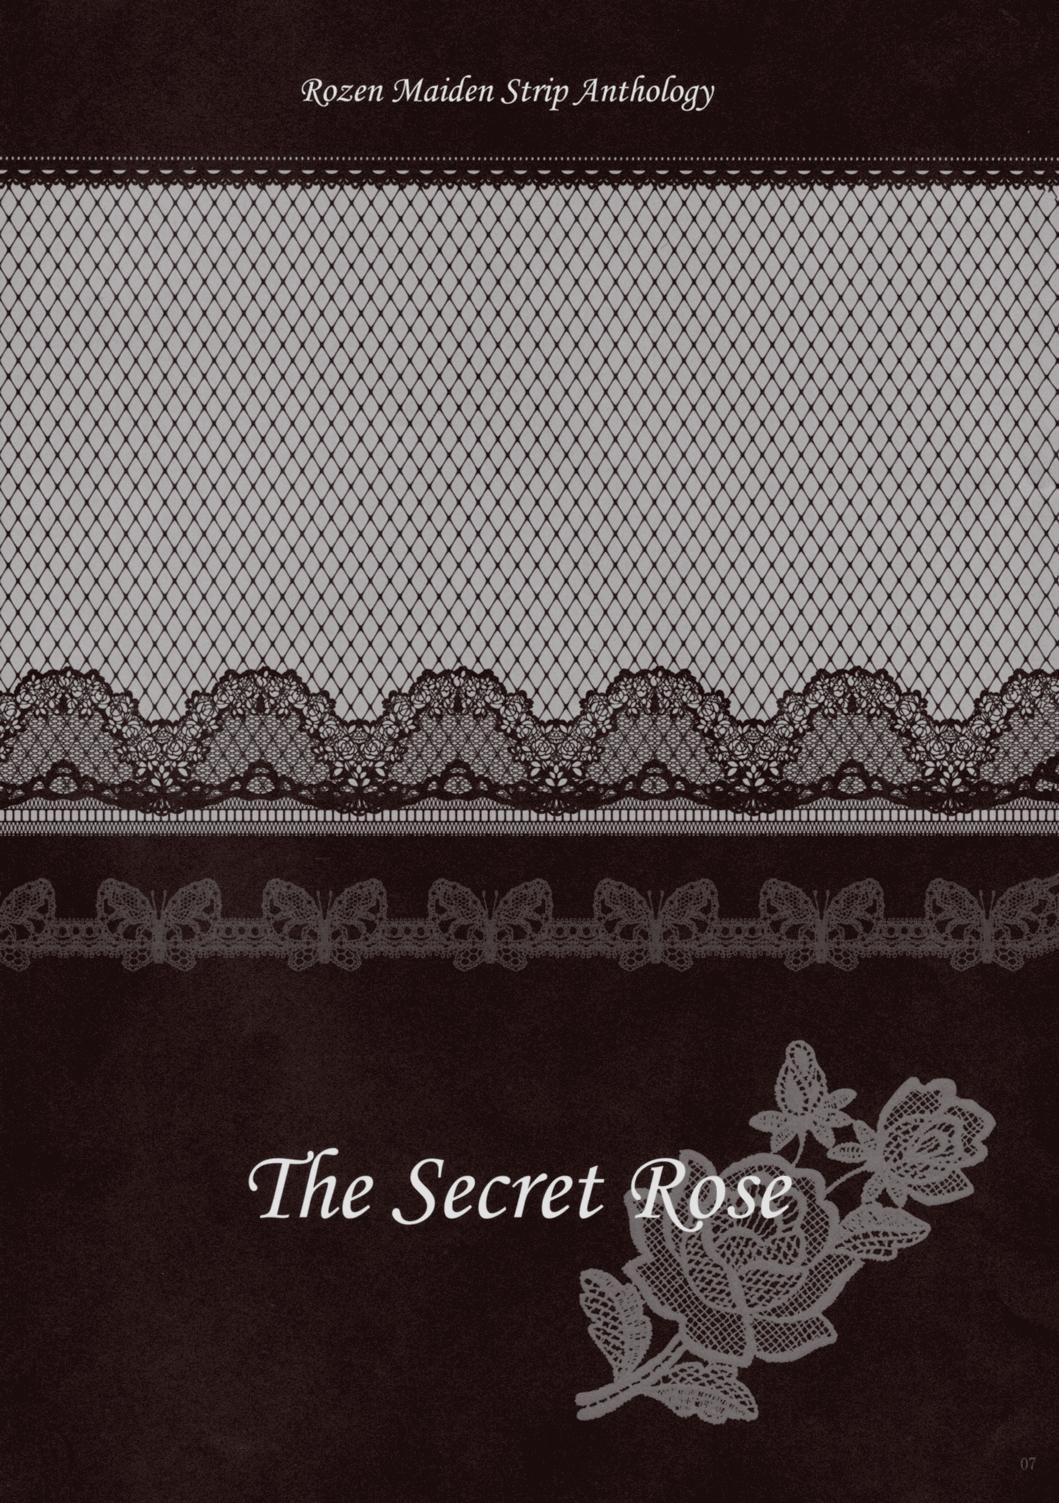 Romance Rozen Maiden Strip Gallery "The Secret Rose" - Rozen maiden Style - Page 6